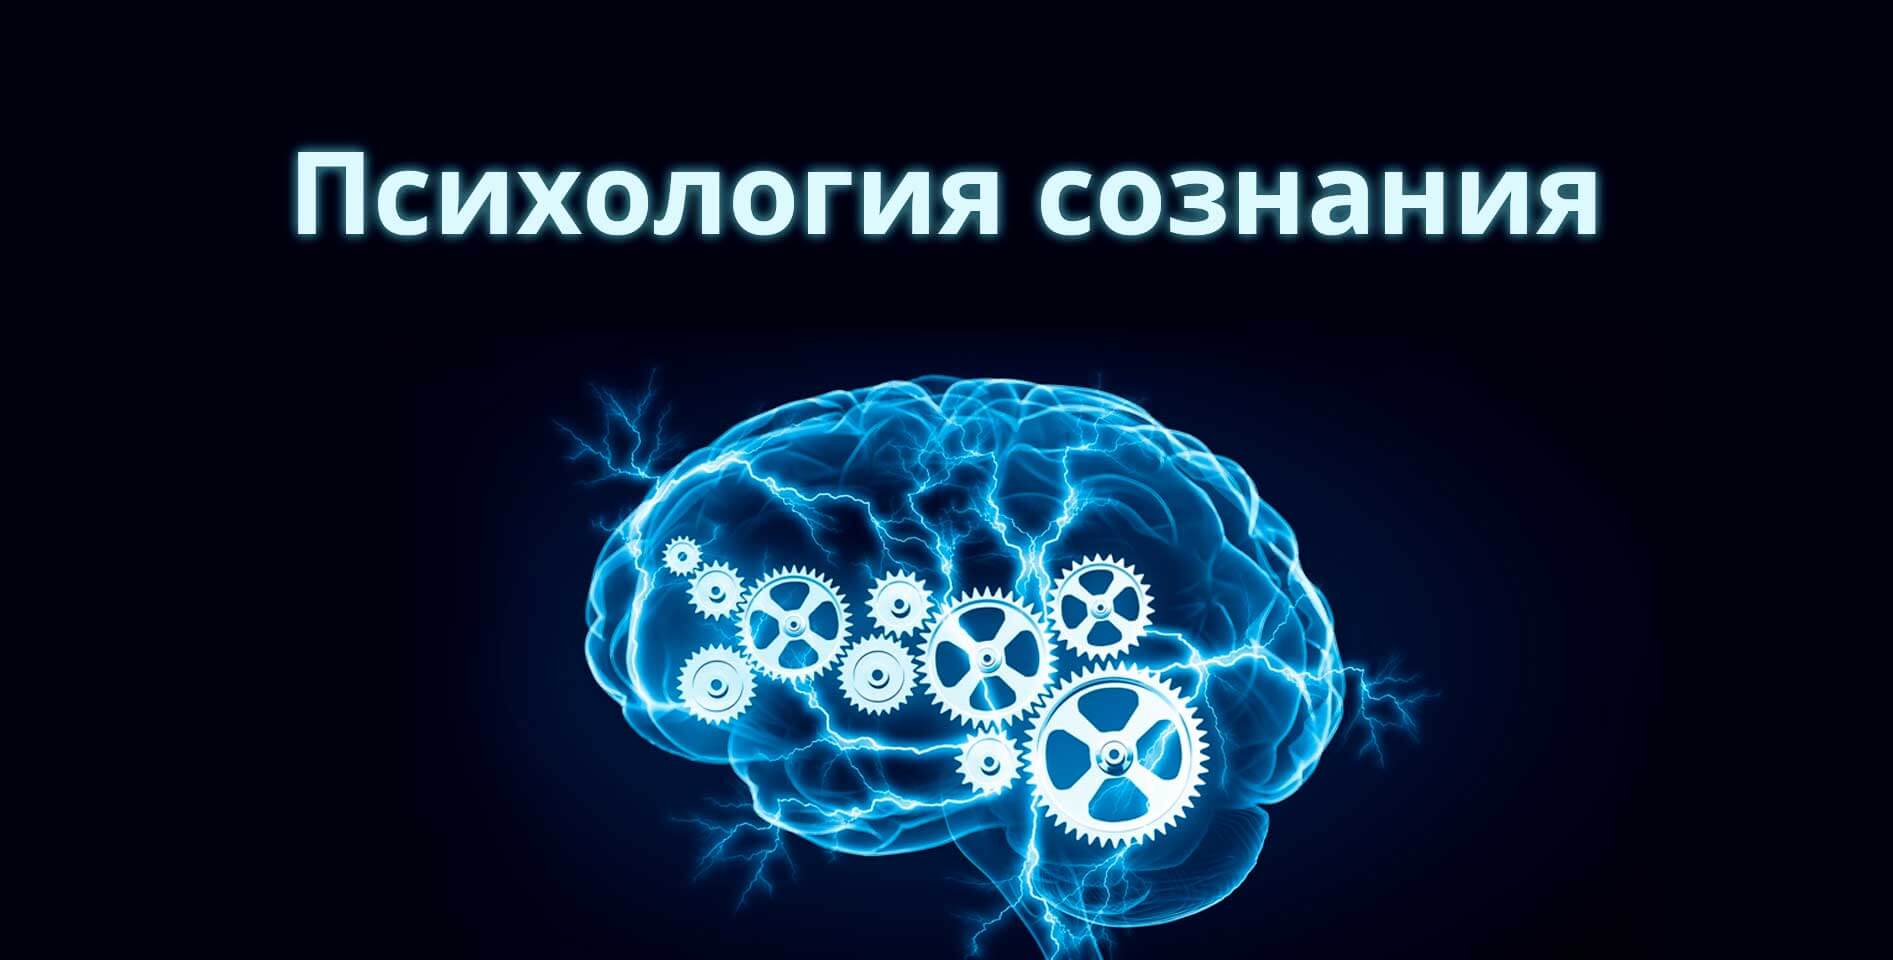 Санкт-Петербургский государственный университет — Психология сознания